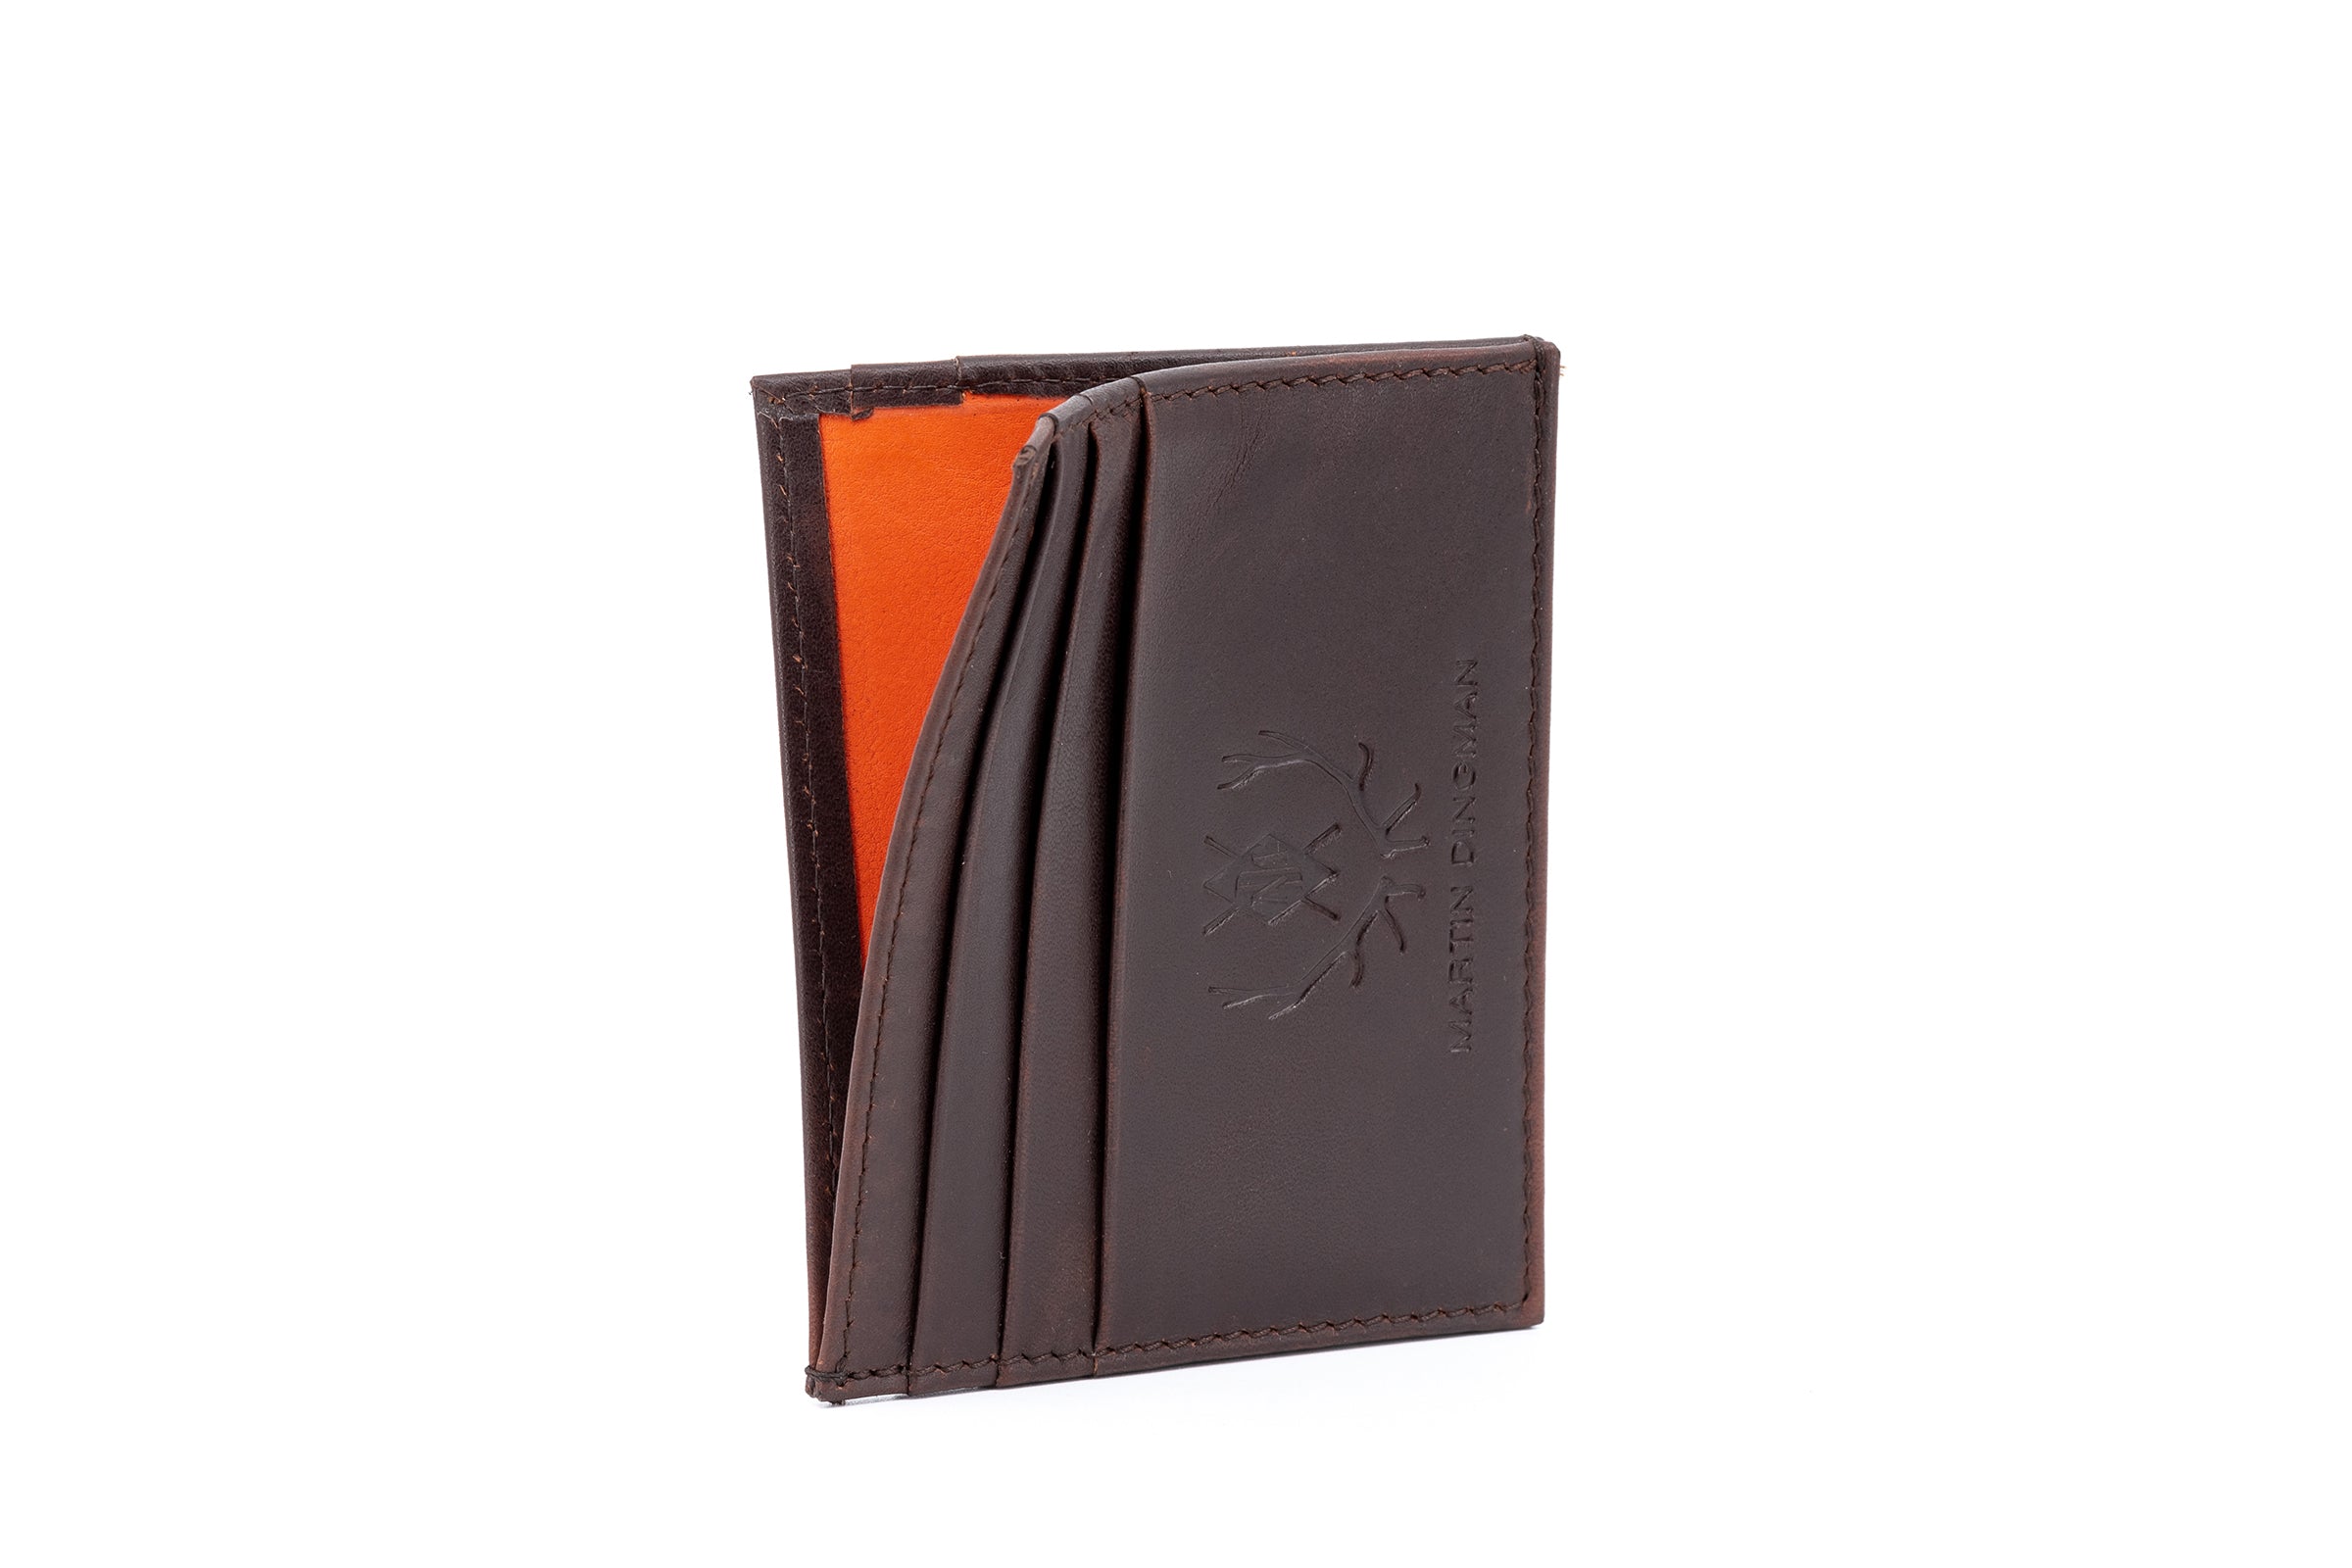 Edward Executive Hand Glazed Saddle Leather ID Card Case - Chocolate